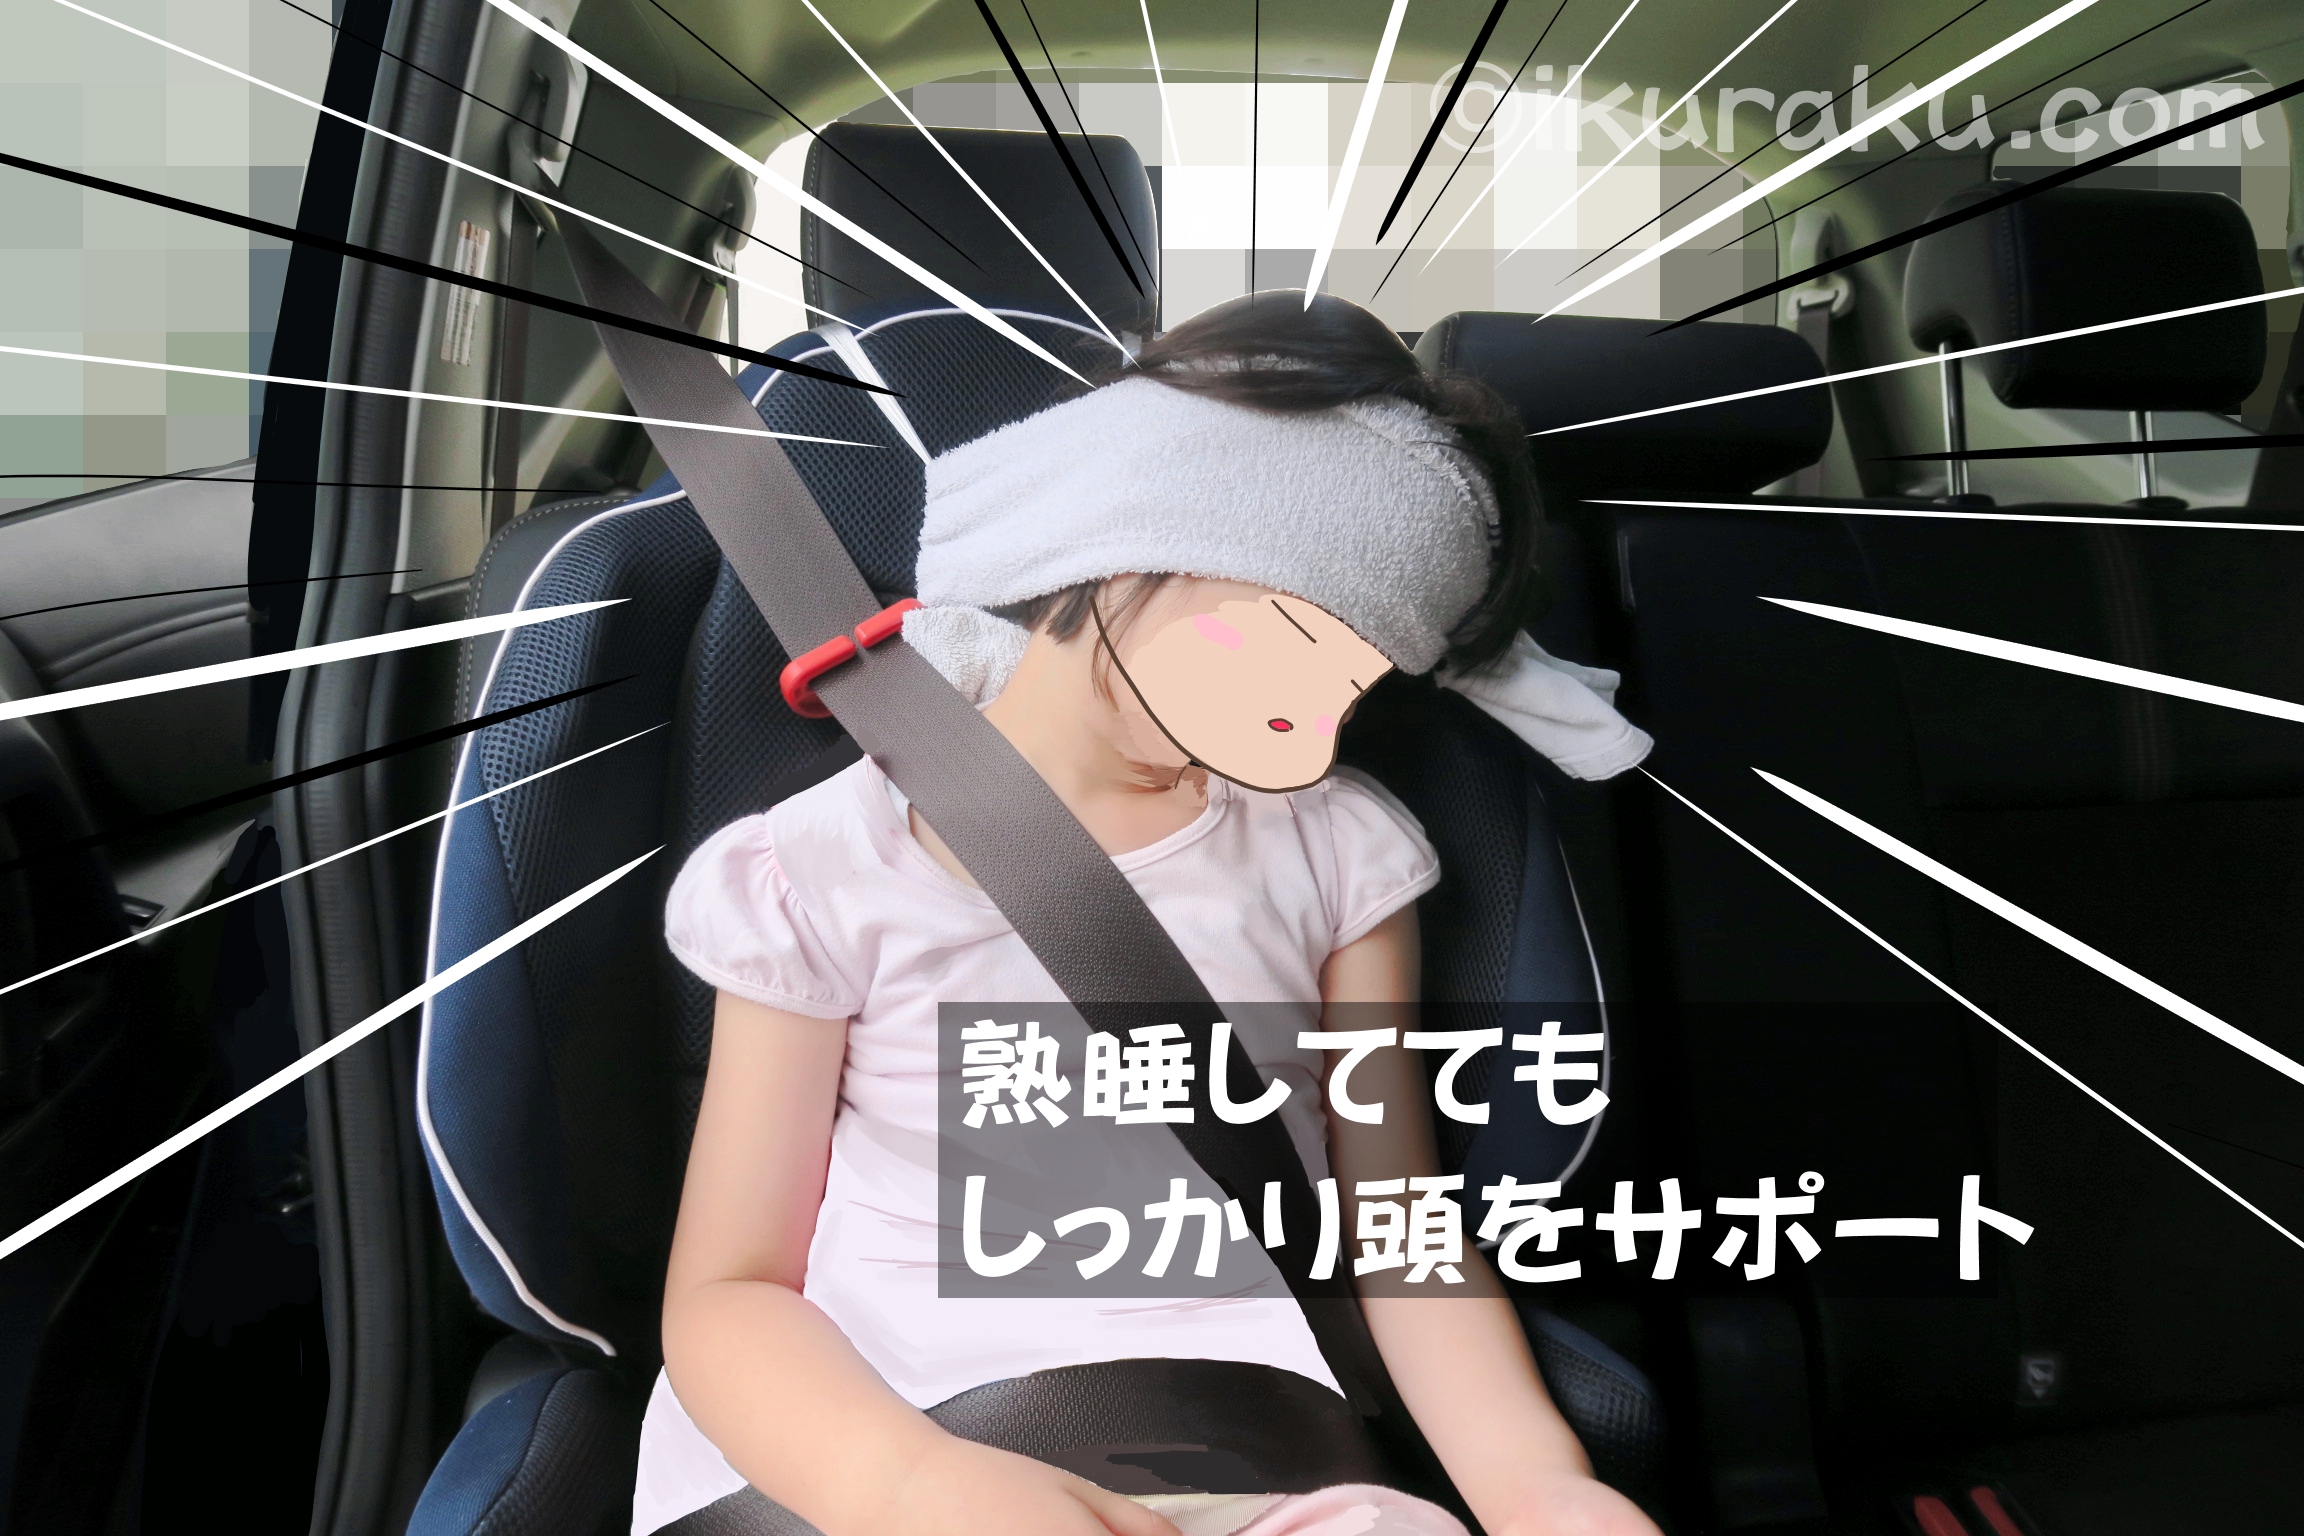 タオルで手作りヘッドサポートは、子どもが熟睡しててもしっかり頭をサポートしてくれる